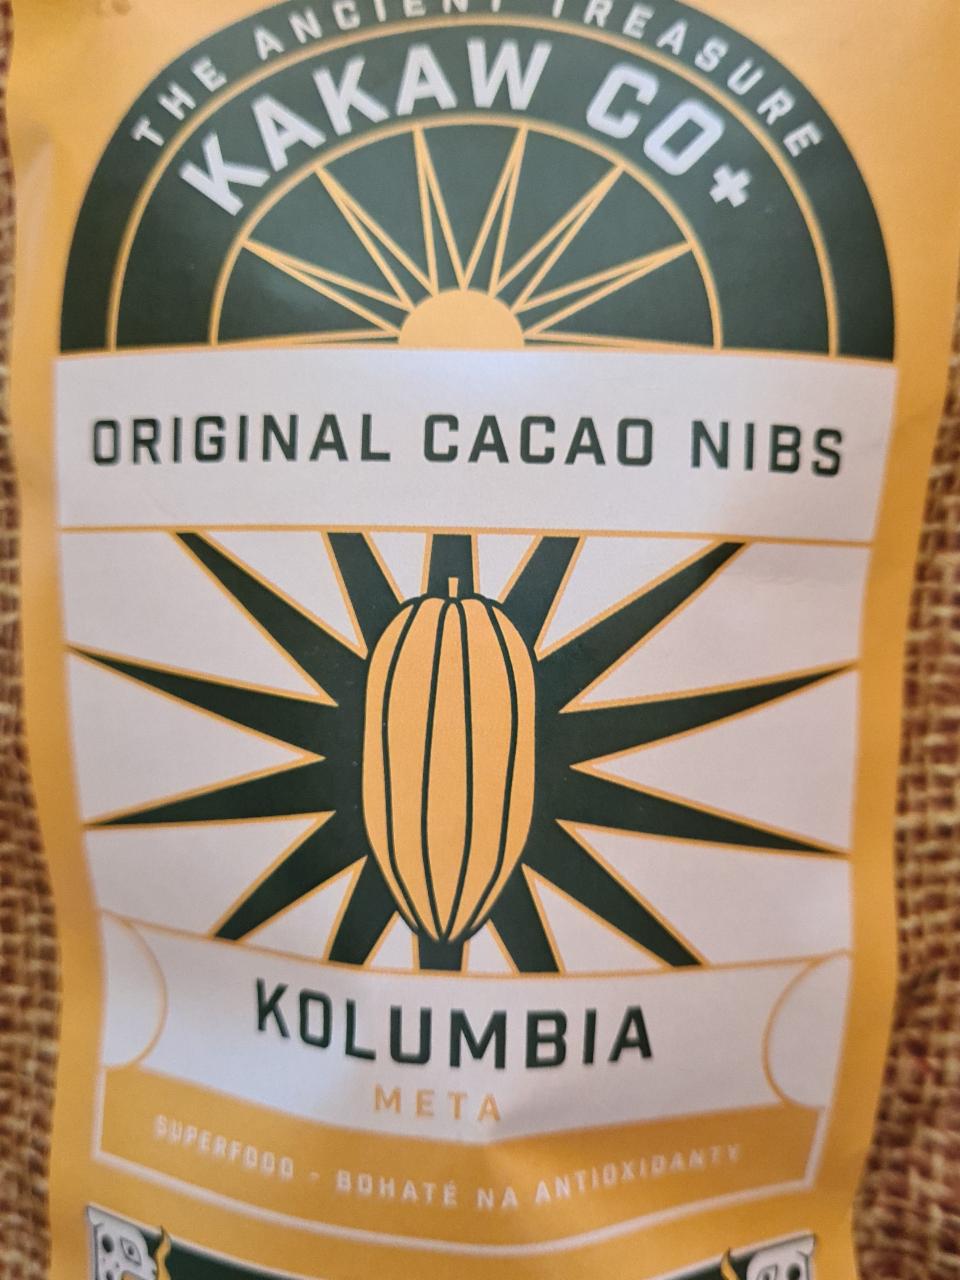 Fotografie - Original Cacao Nibs Kakaw Co+